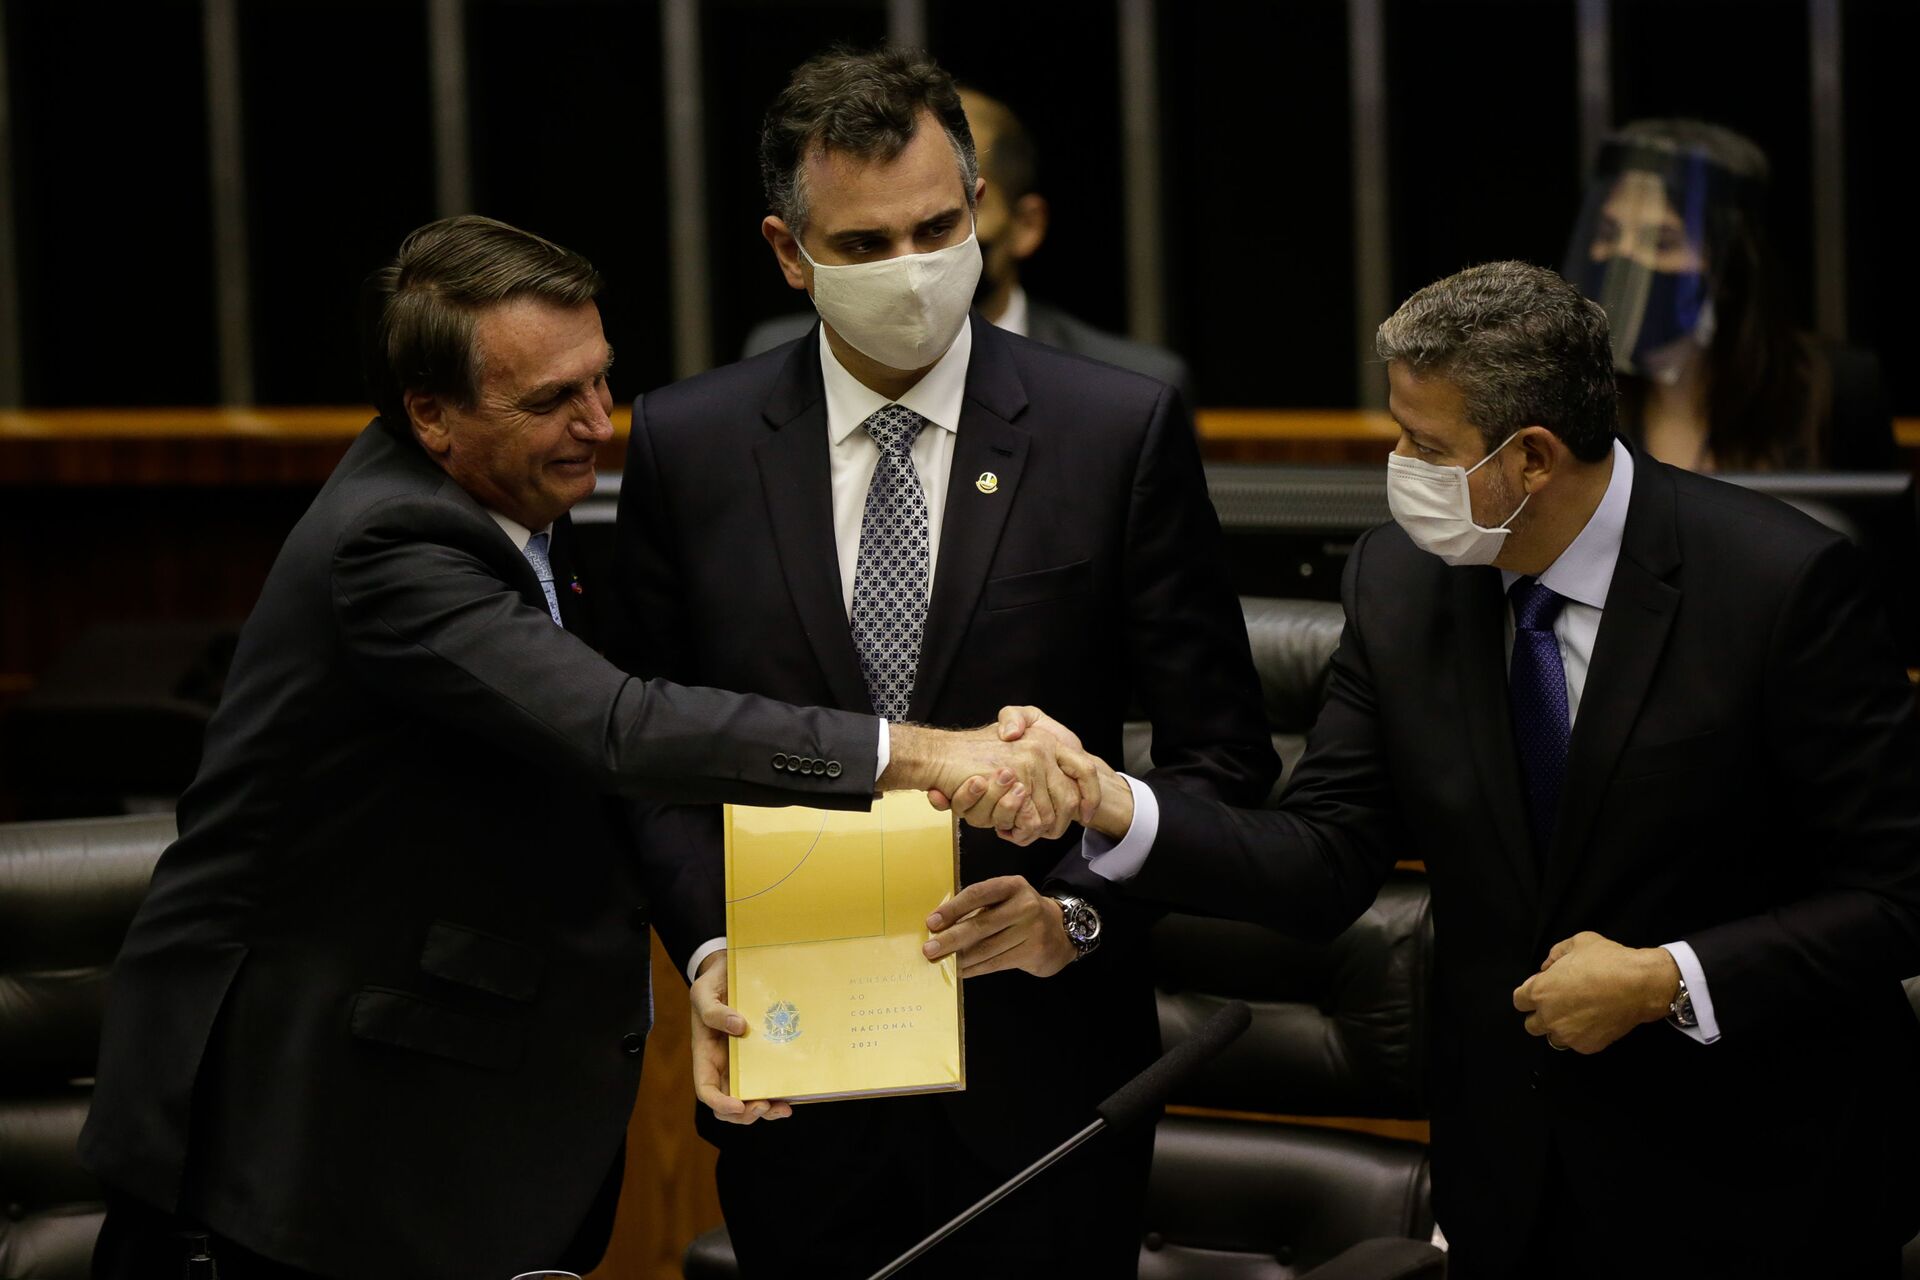 Após falas de Bolsonaro, 8 partidos afirmam que nenhuma 'ameaça à democracia' pode ser tolerada - Sputnik Brasil, 1920, 10.07.2021